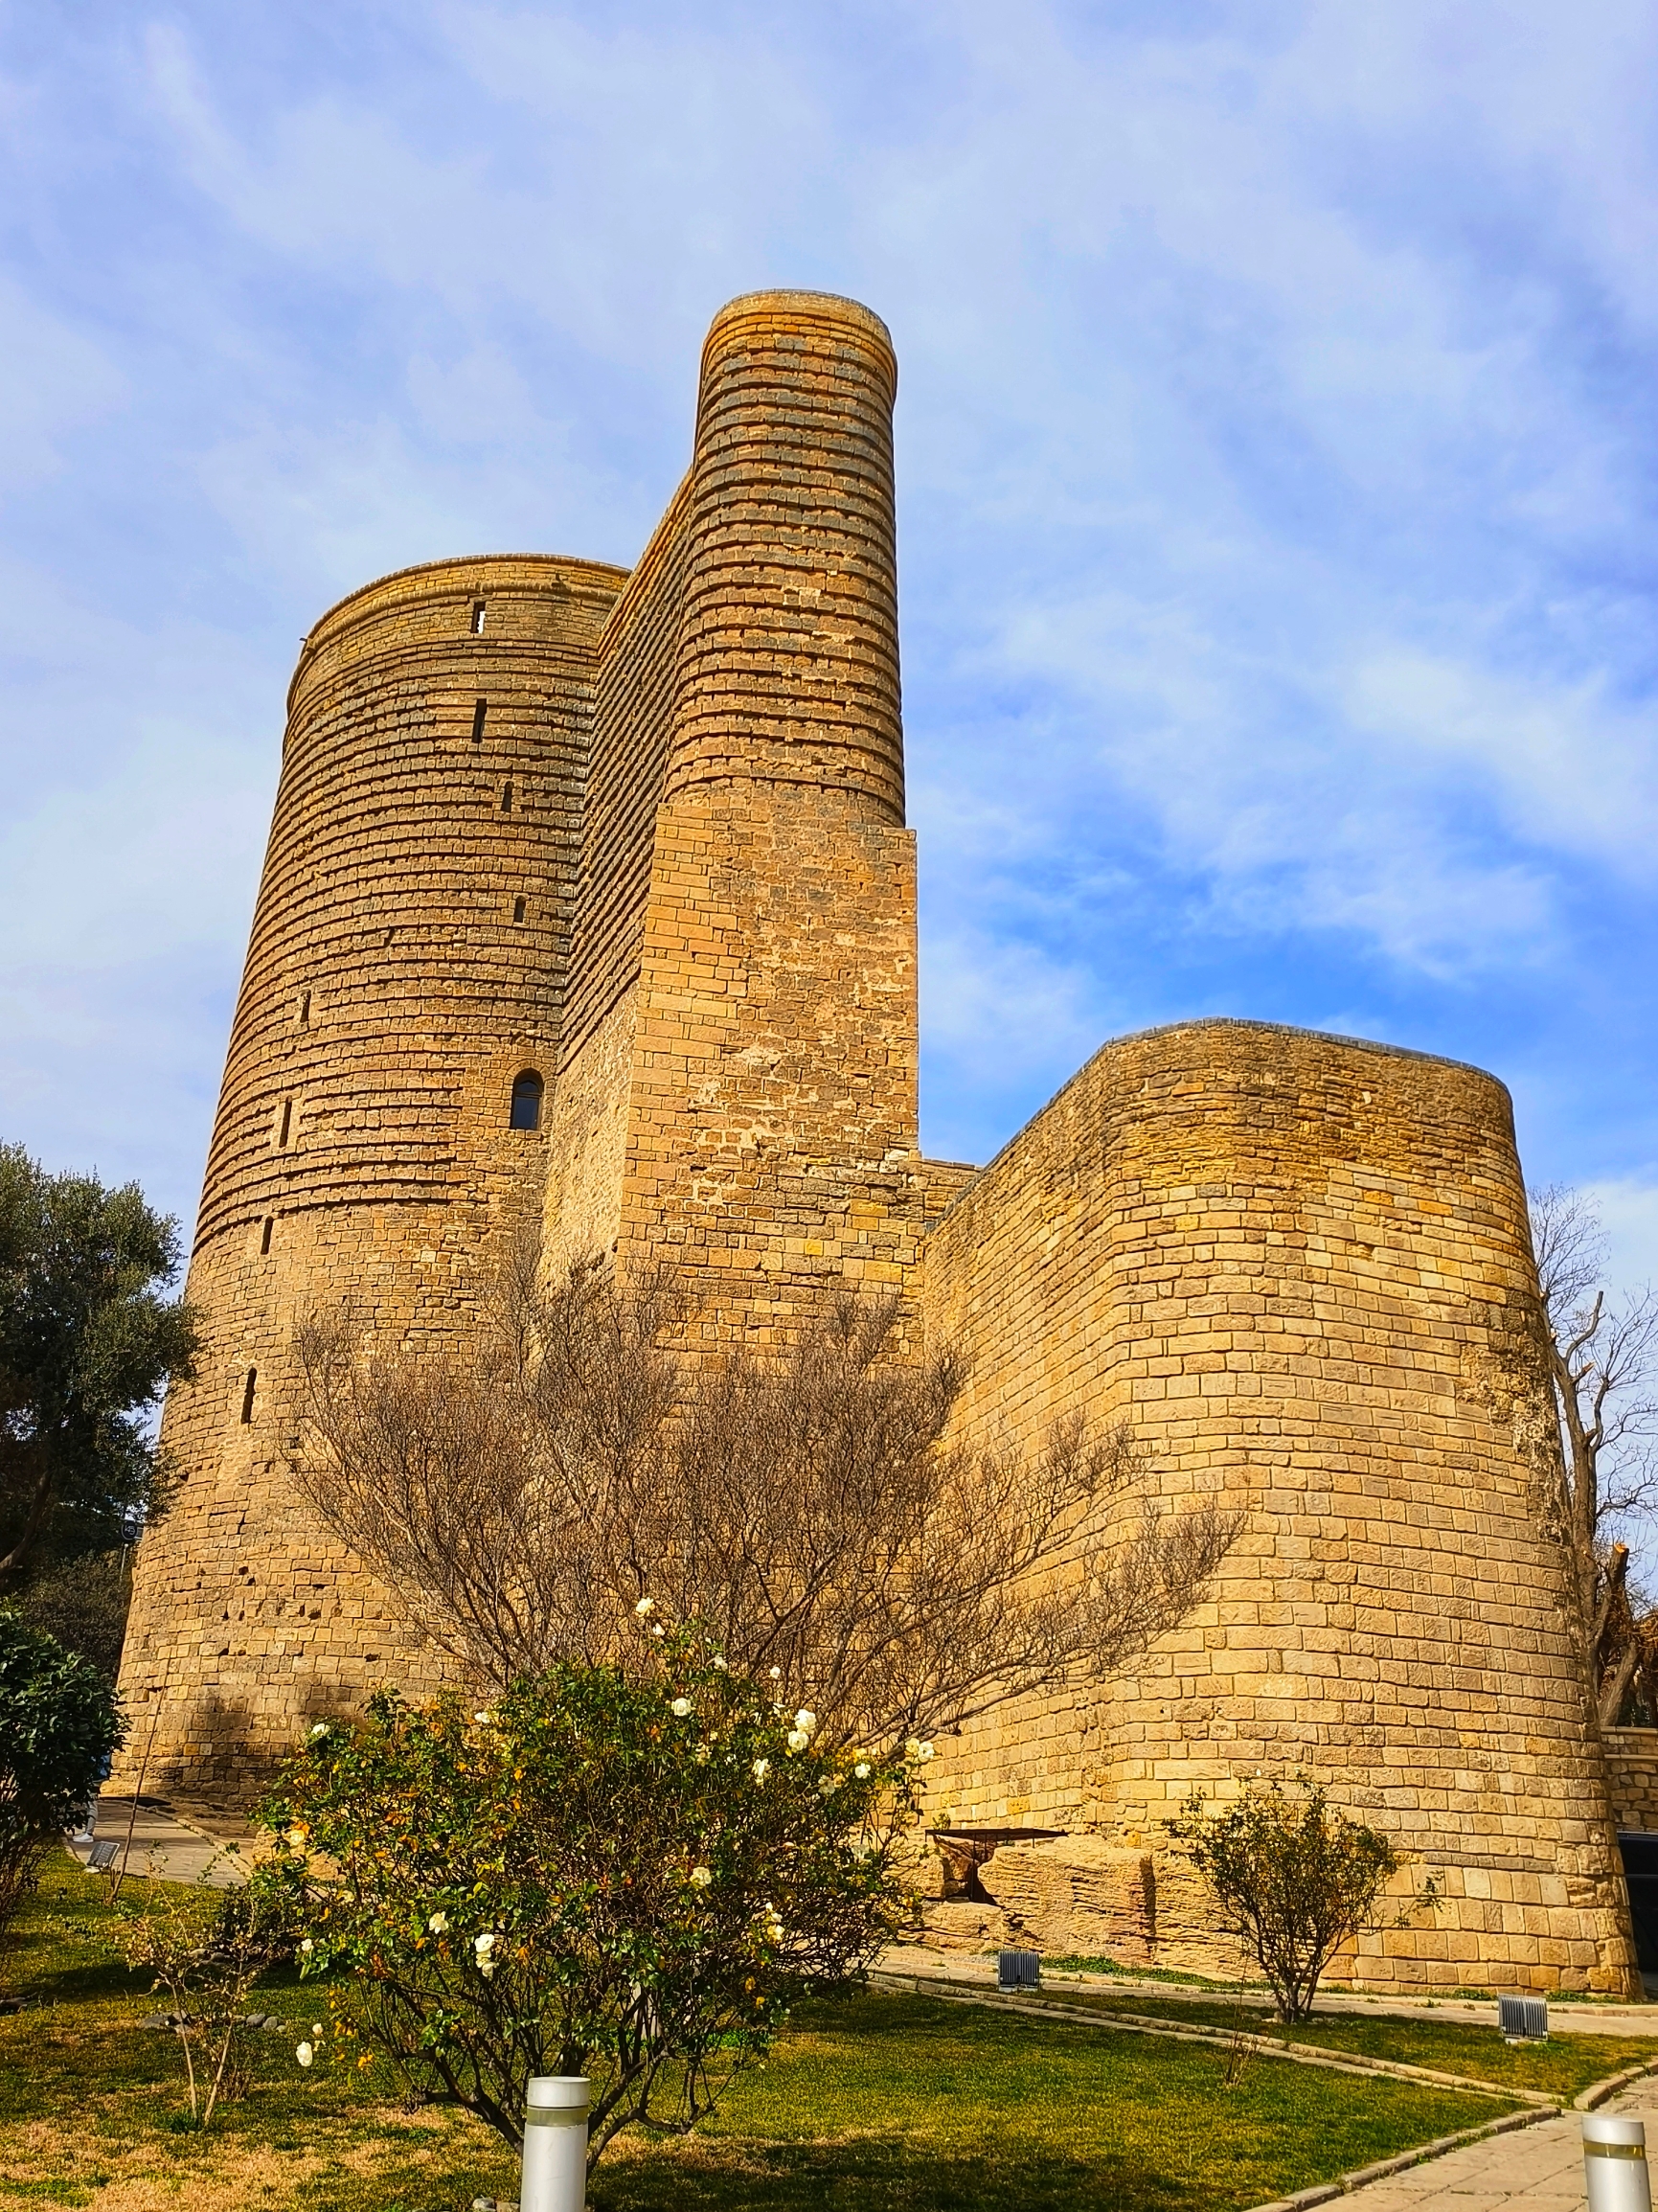 少女塔是​巴库的地标建筑，也是老城区“古建筑”的代表，市内游玩必去之处。​外观就是大型圆柱体城堡。 